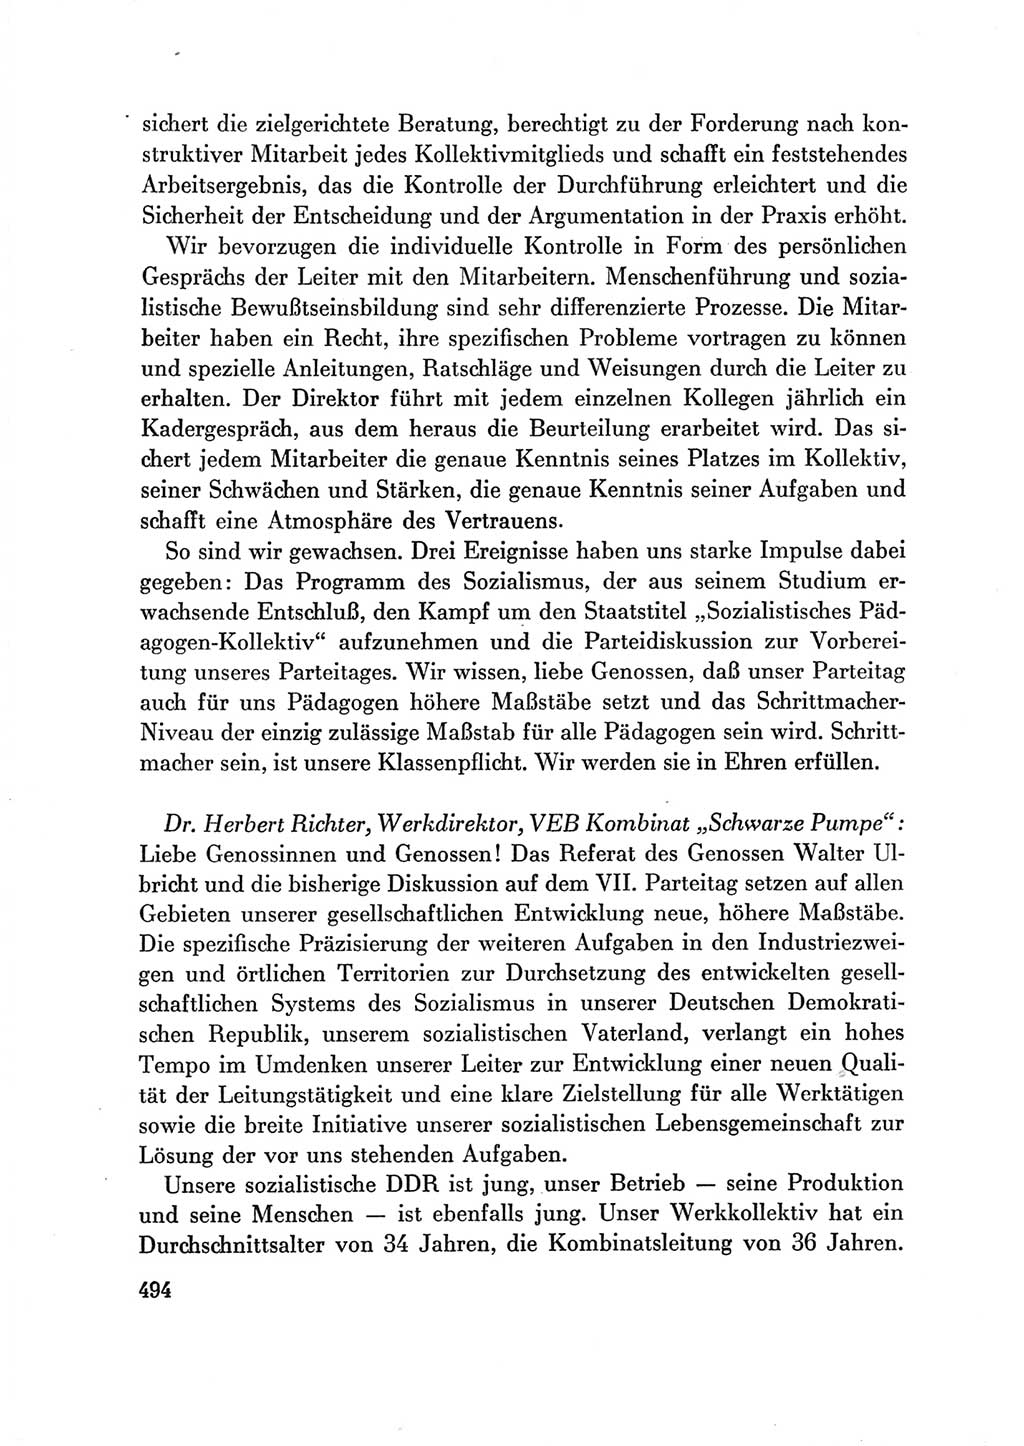 Protokoll der Verhandlungen des Ⅶ. Parteitages der Sozialistischen Einheitspartei Deutschlands (SED) [Deutsche Demokratische Republik (DDR)] 1967, Band Ⅲ, Seite 494 (Prot. Verh. Ⅶ. PT SED DDR 1967, Bd. Ⅲ, S. 494)